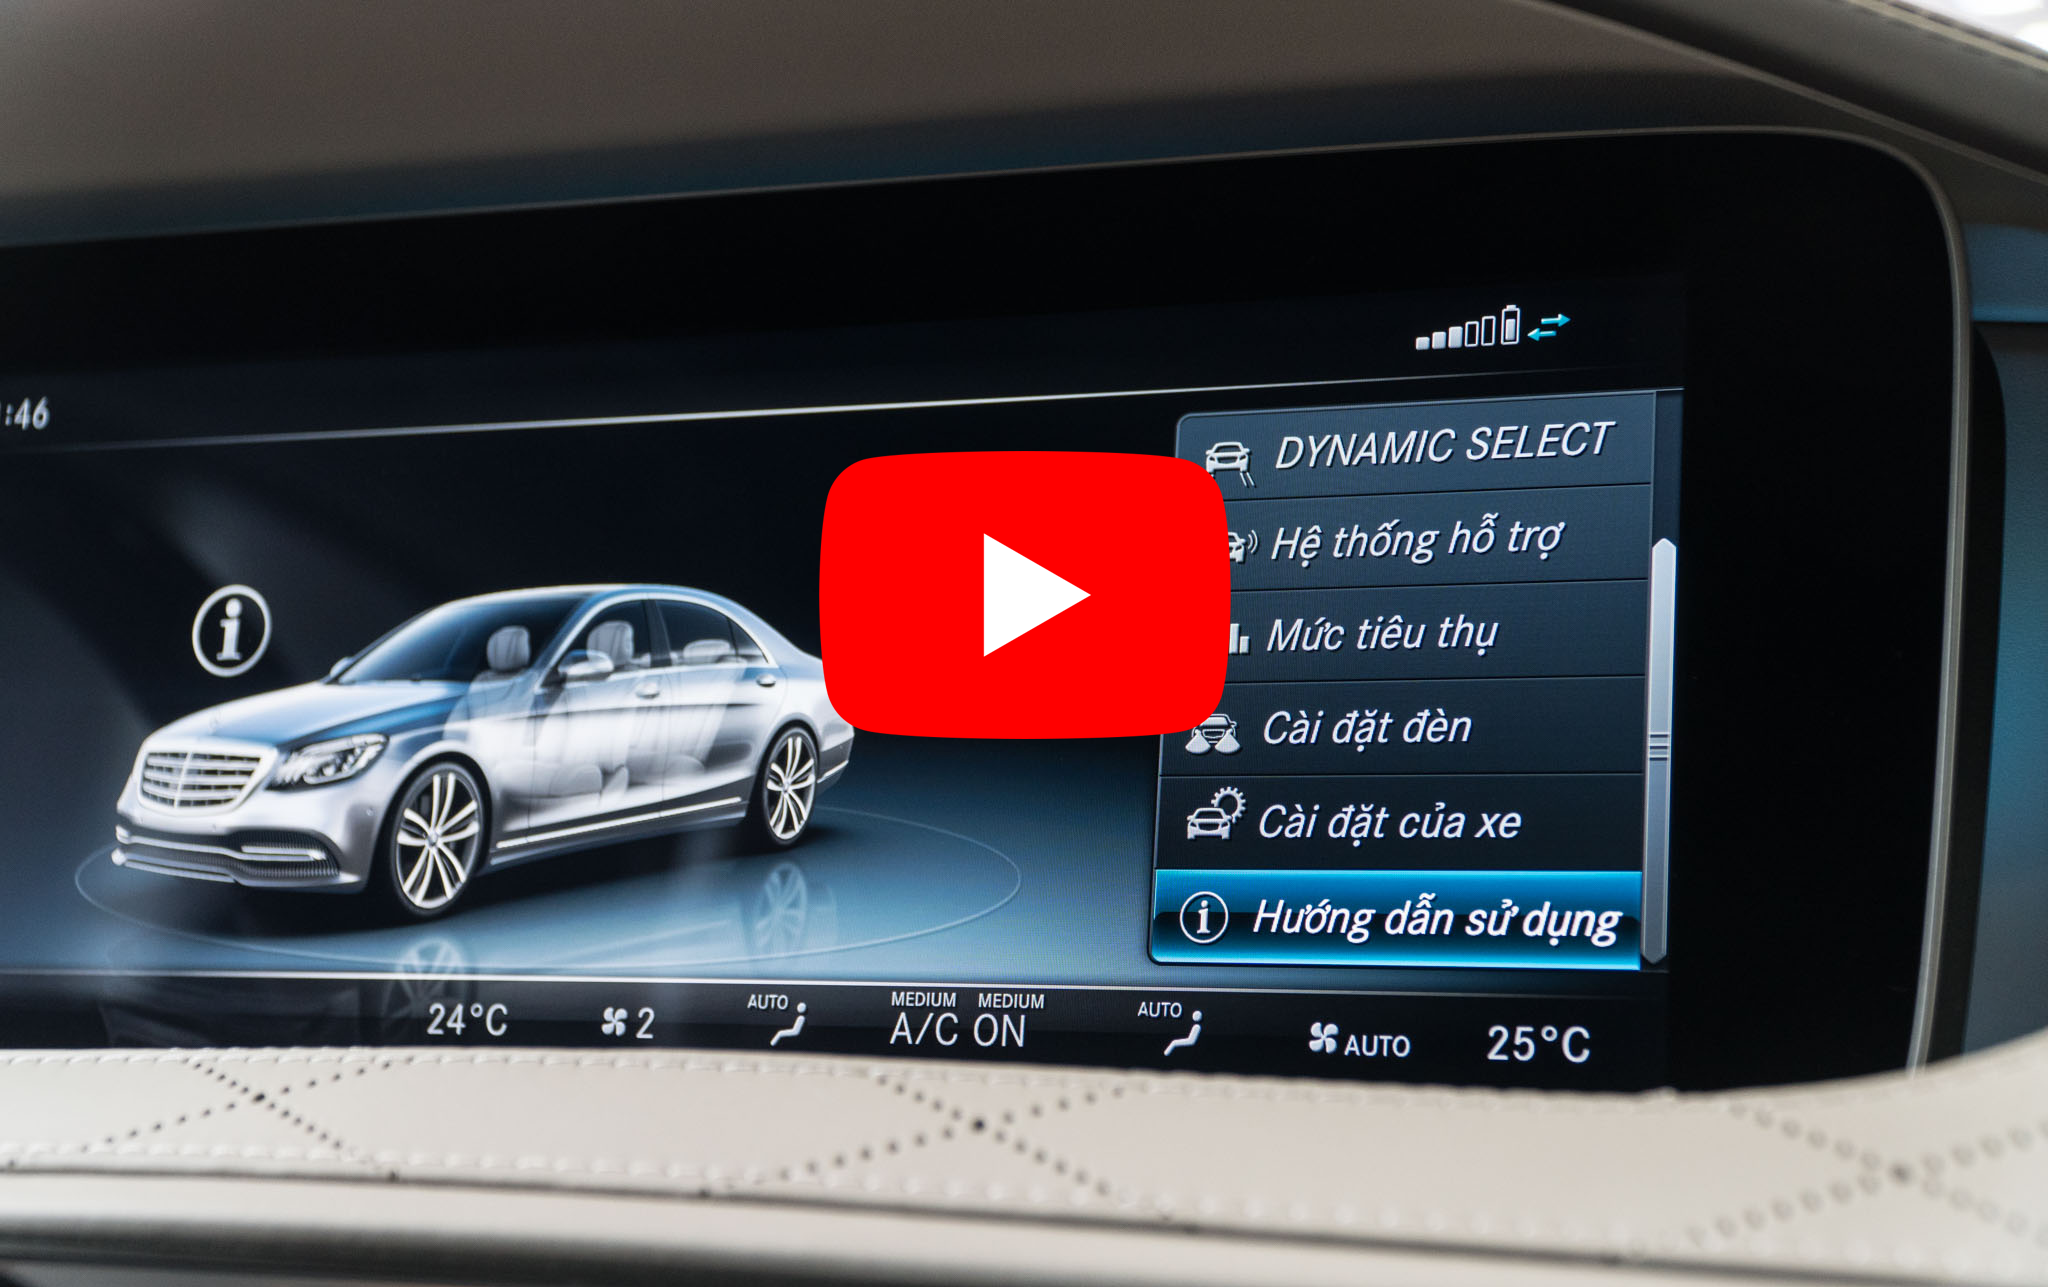 [Video] Hướng dẫn sử dụng sách điện tử trên xe Mercedes